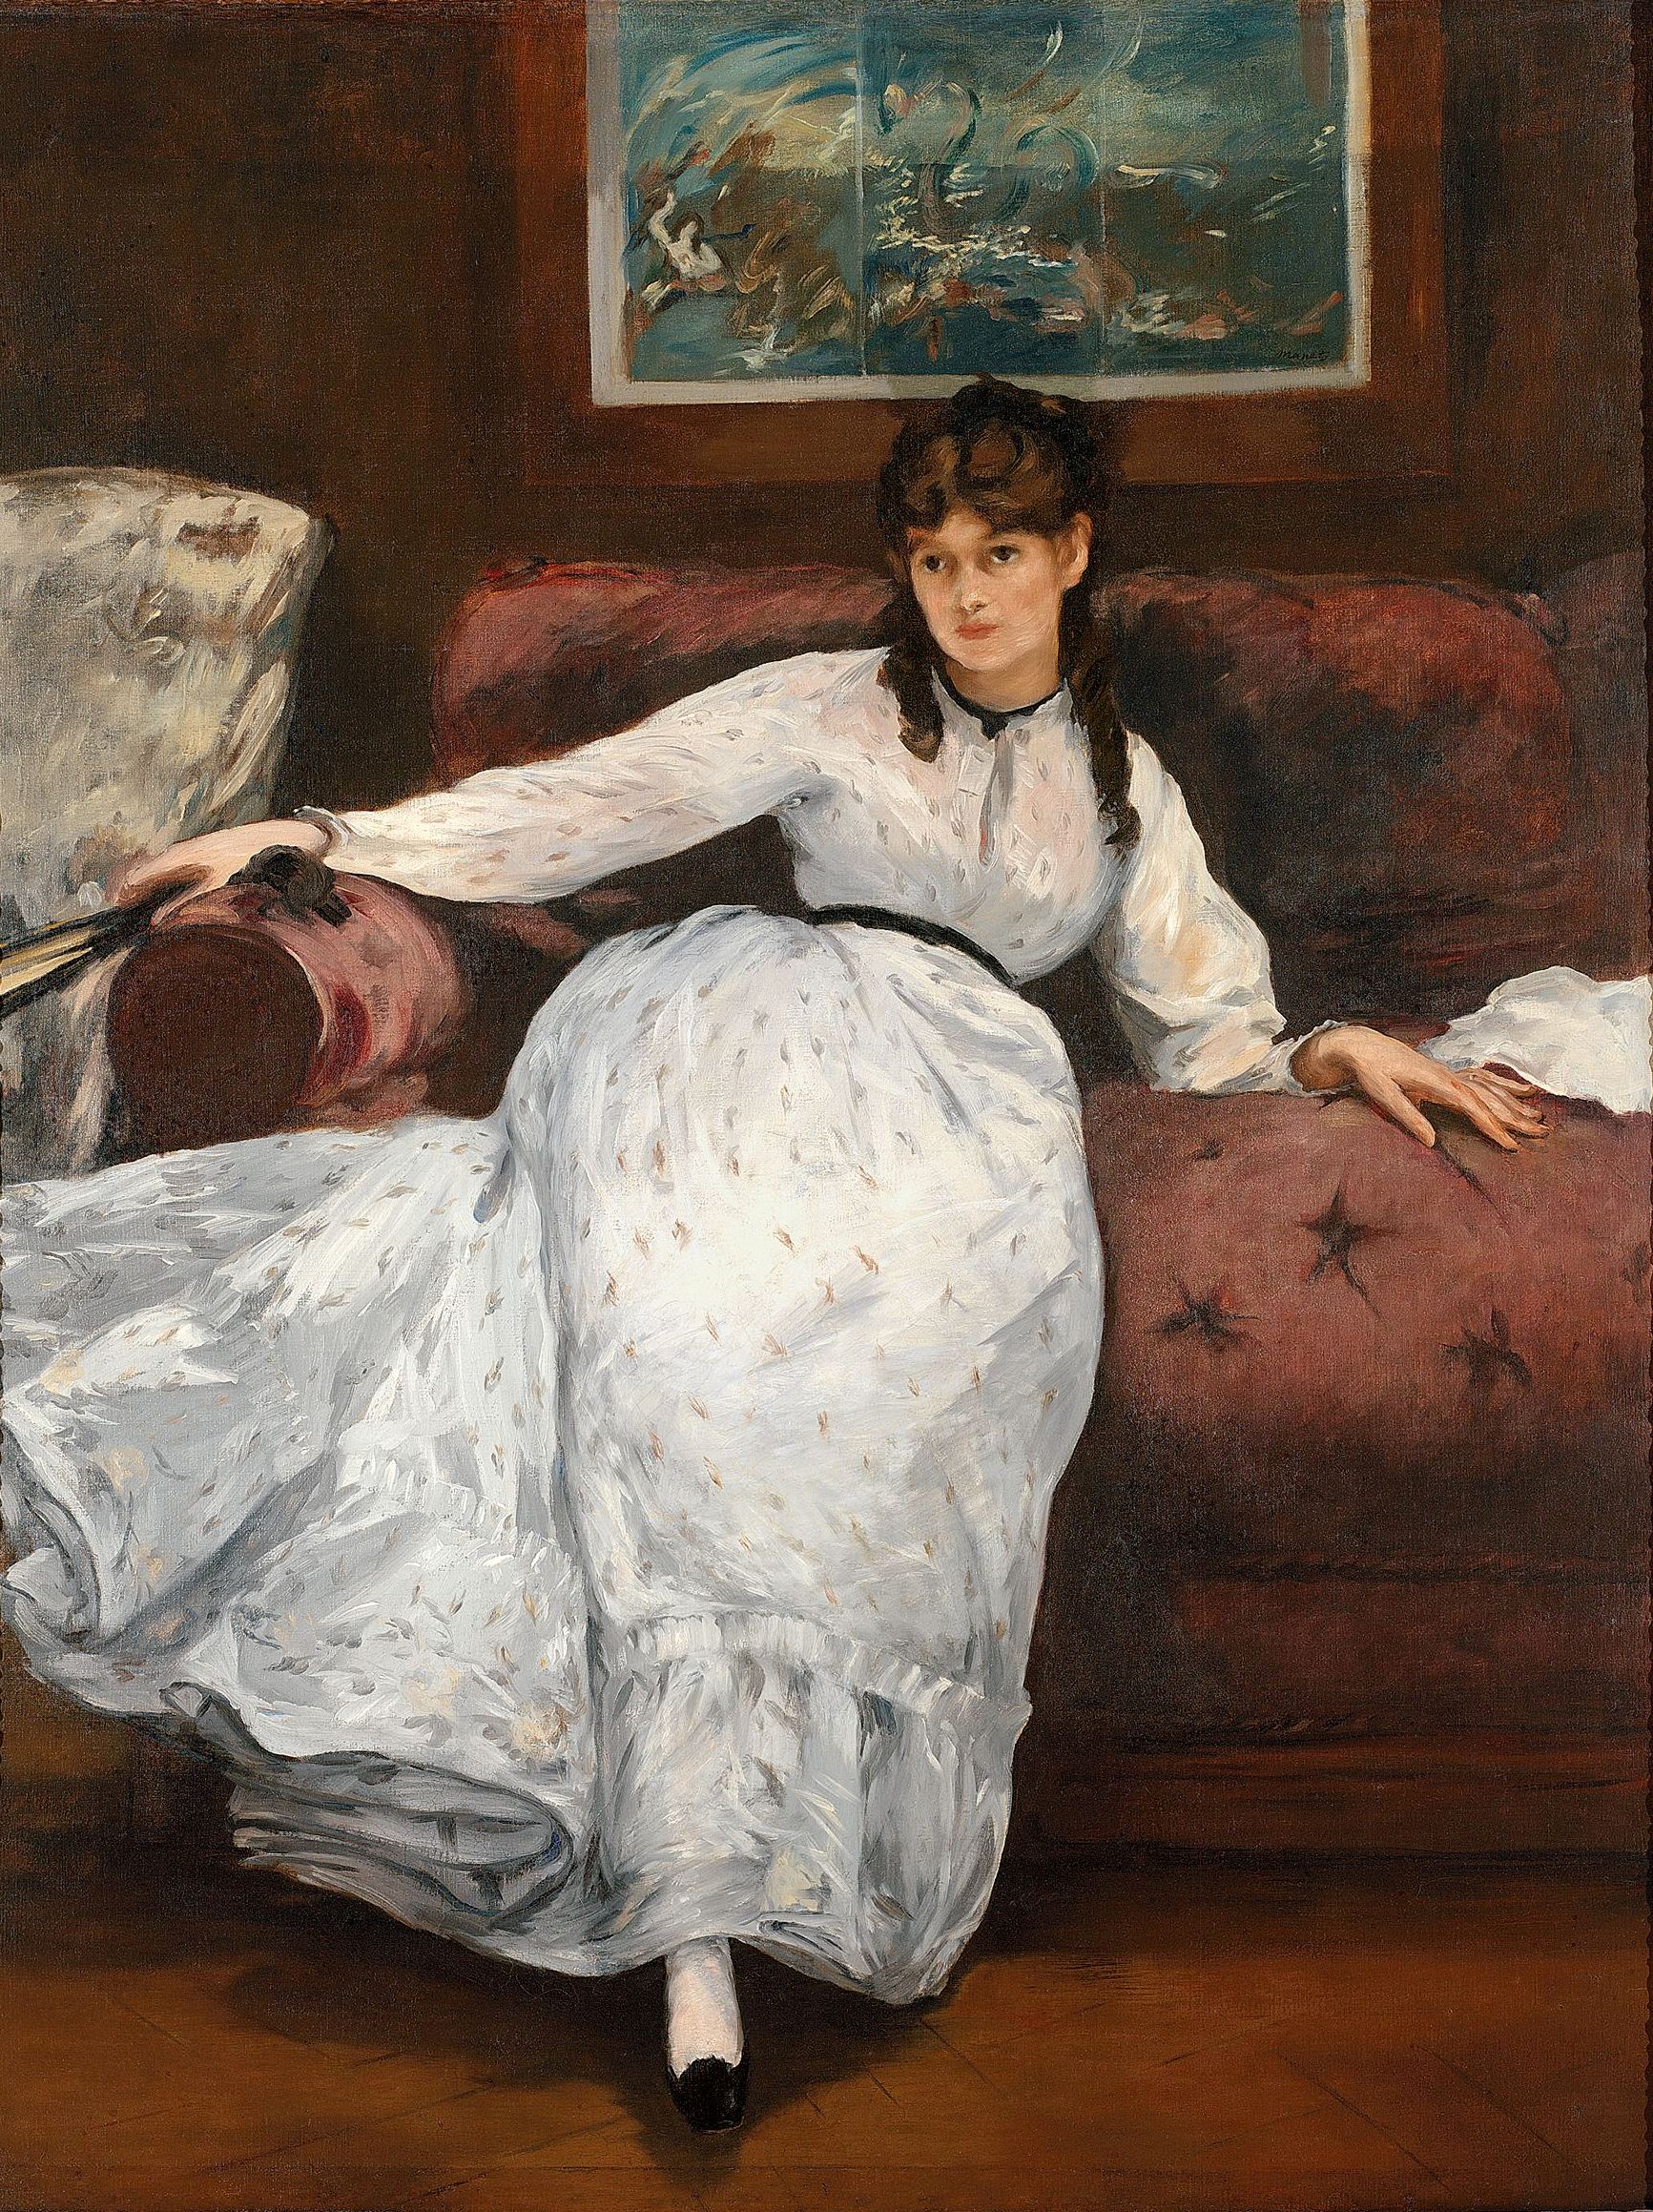 Artist Monographs Berthe Morisot